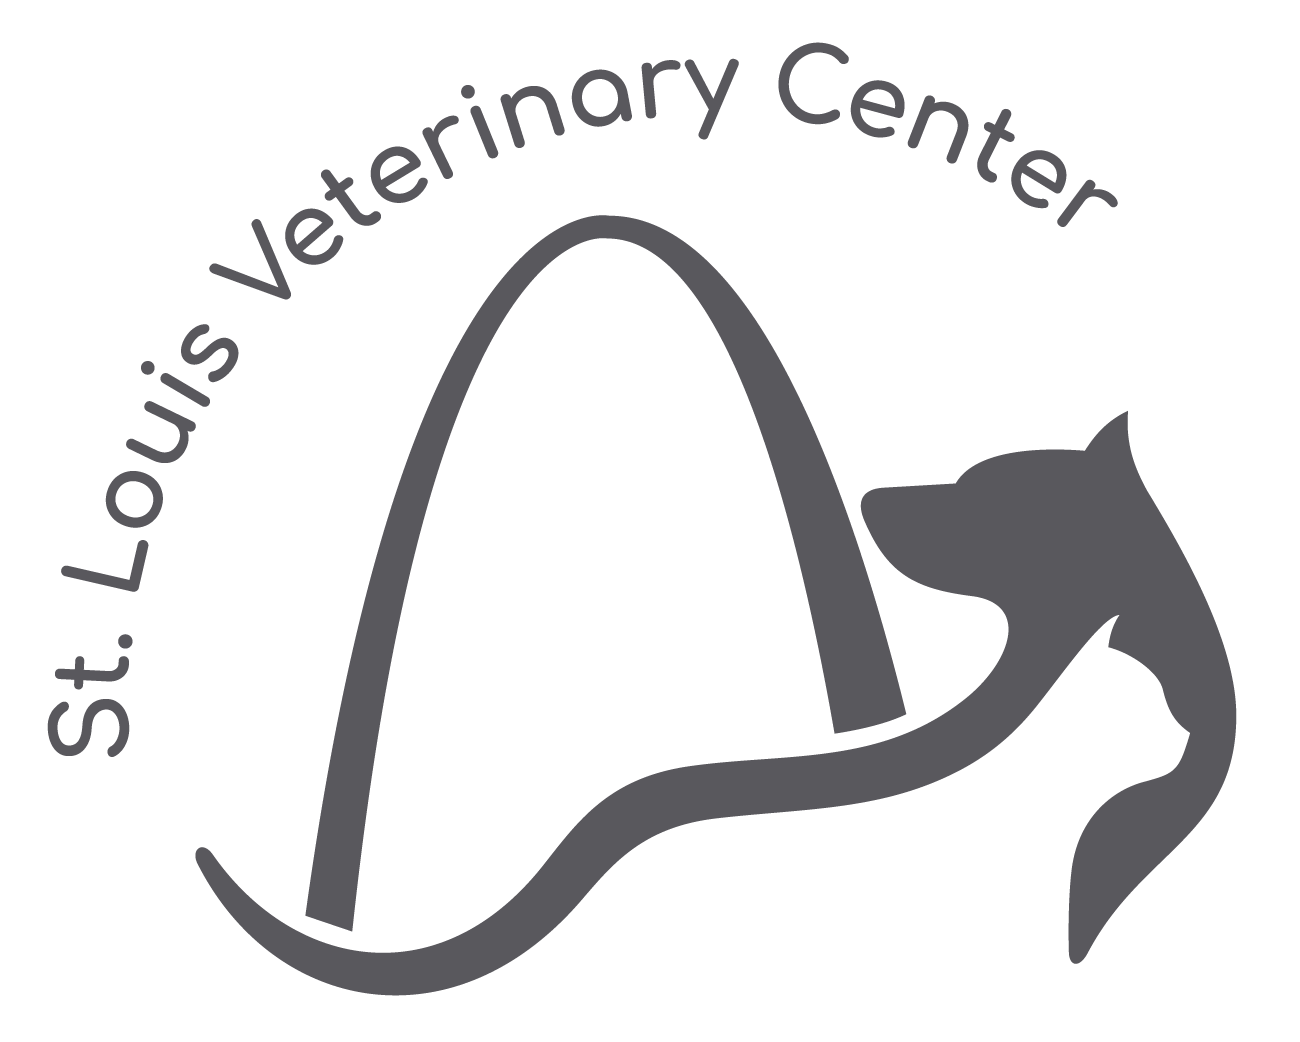 St. Louis Veterinary Center Logo